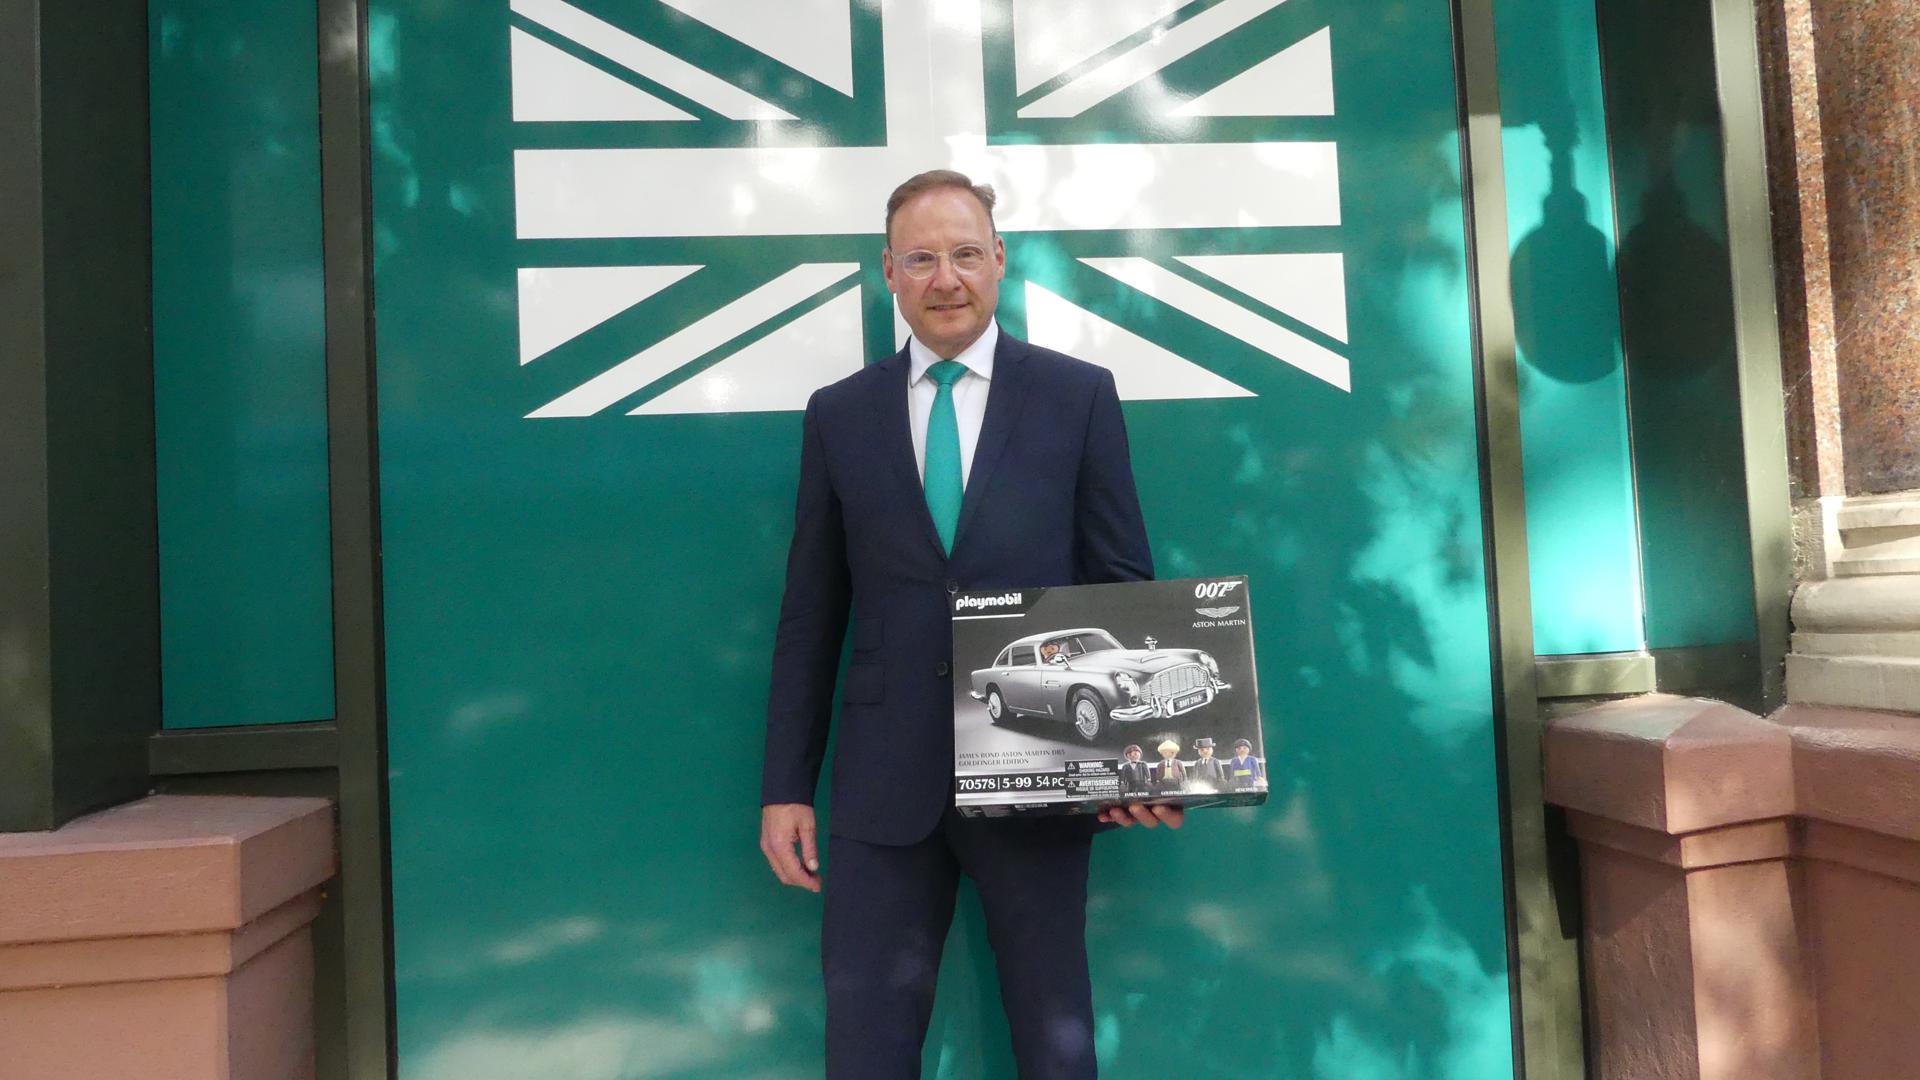 Ernst-Jürgen Wackenhut freut sich schon darauf, den Aston Martin von Playmobil gemeinsam mit seinen Töchtern zusammenzubauen.